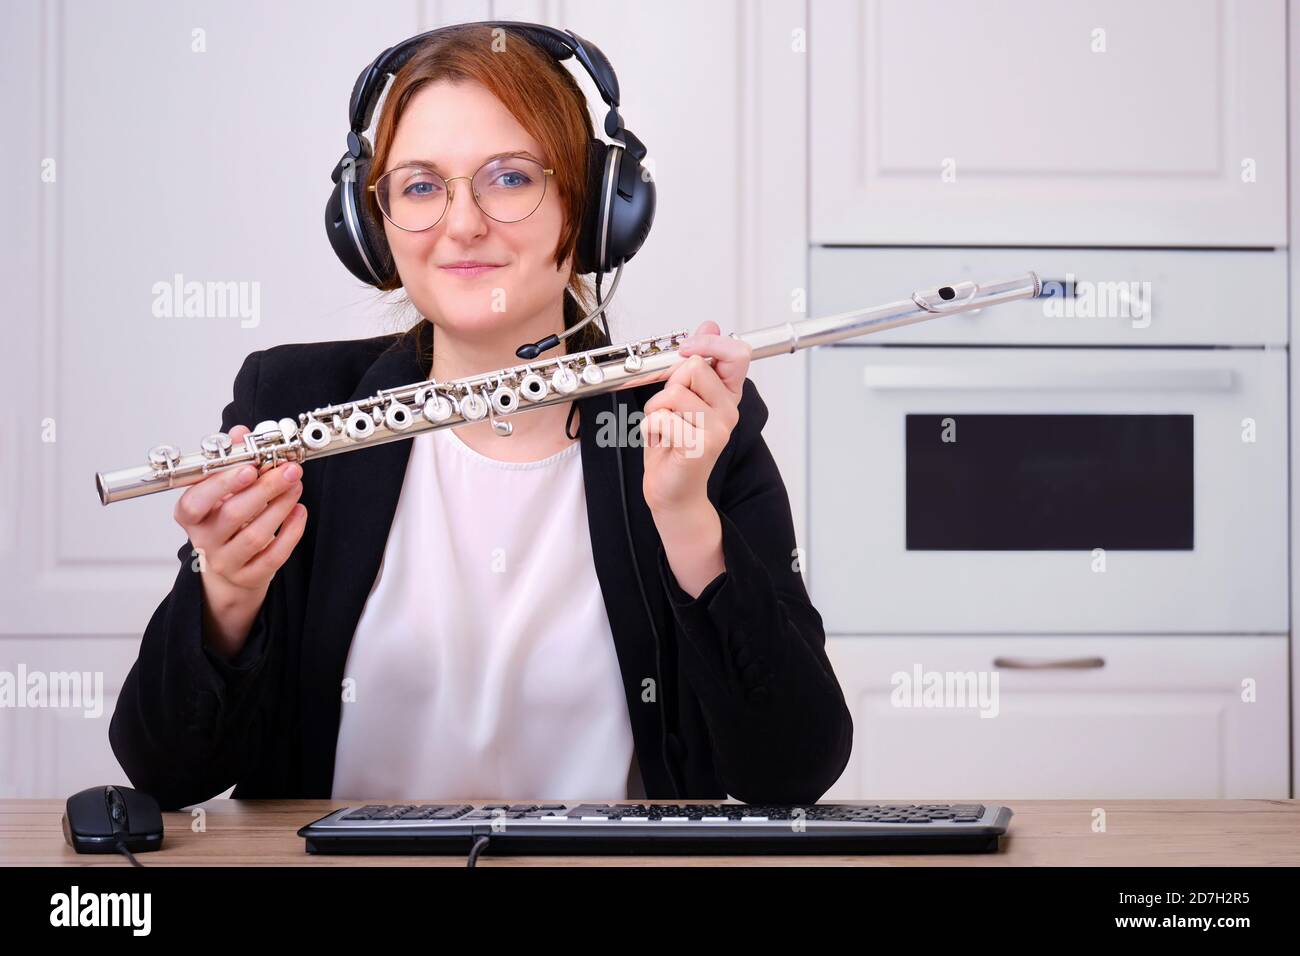 Un profesor de música proporciona formación en línea para tocar la flauta.  Una flautista femenina enseña una lección de flauta a través de Internet,  vista de cámara. Concepto en línea Fotografía de